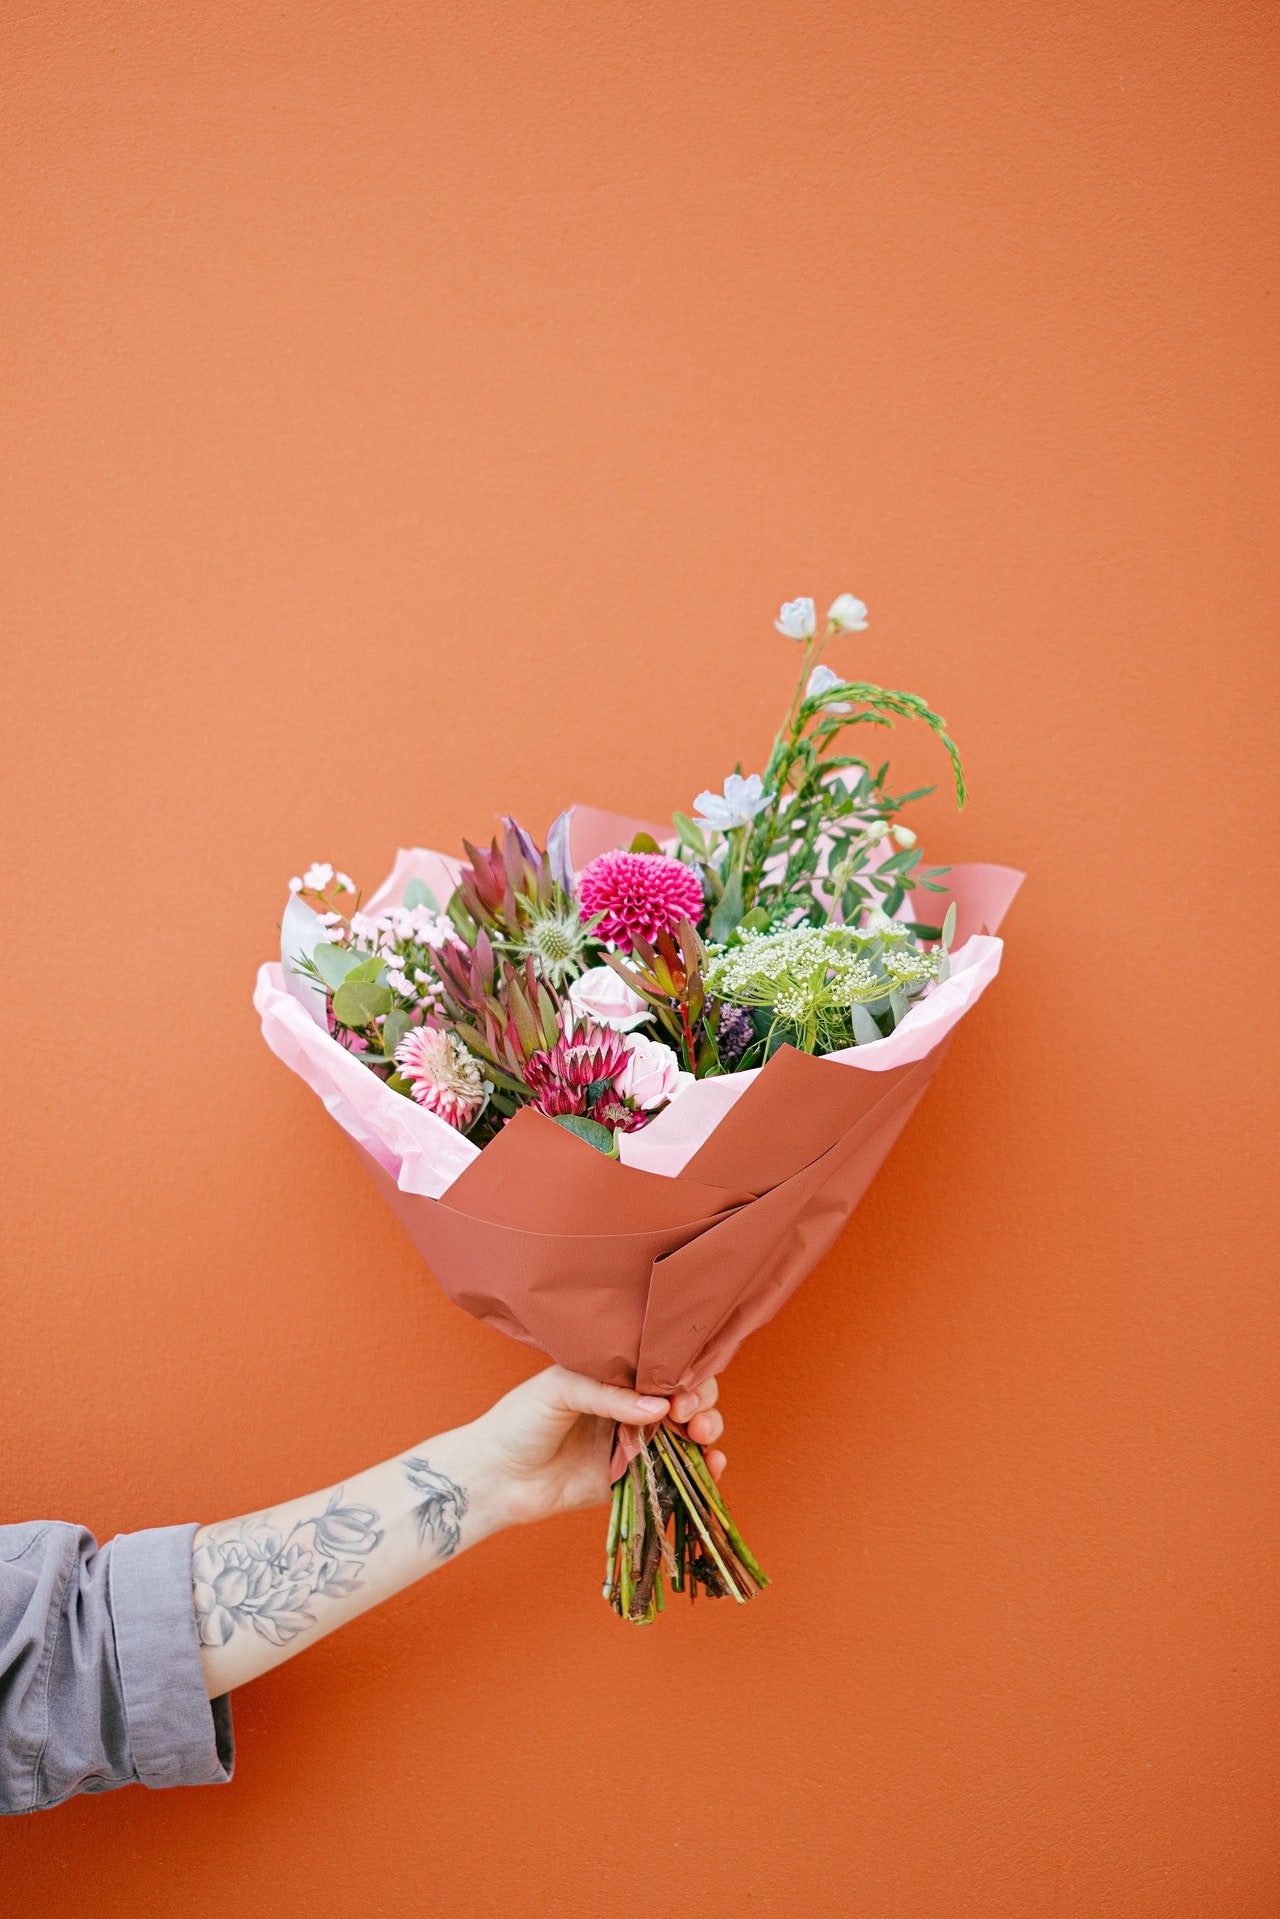 Callum est arrivé avec des fleurs. | Source : Pexels